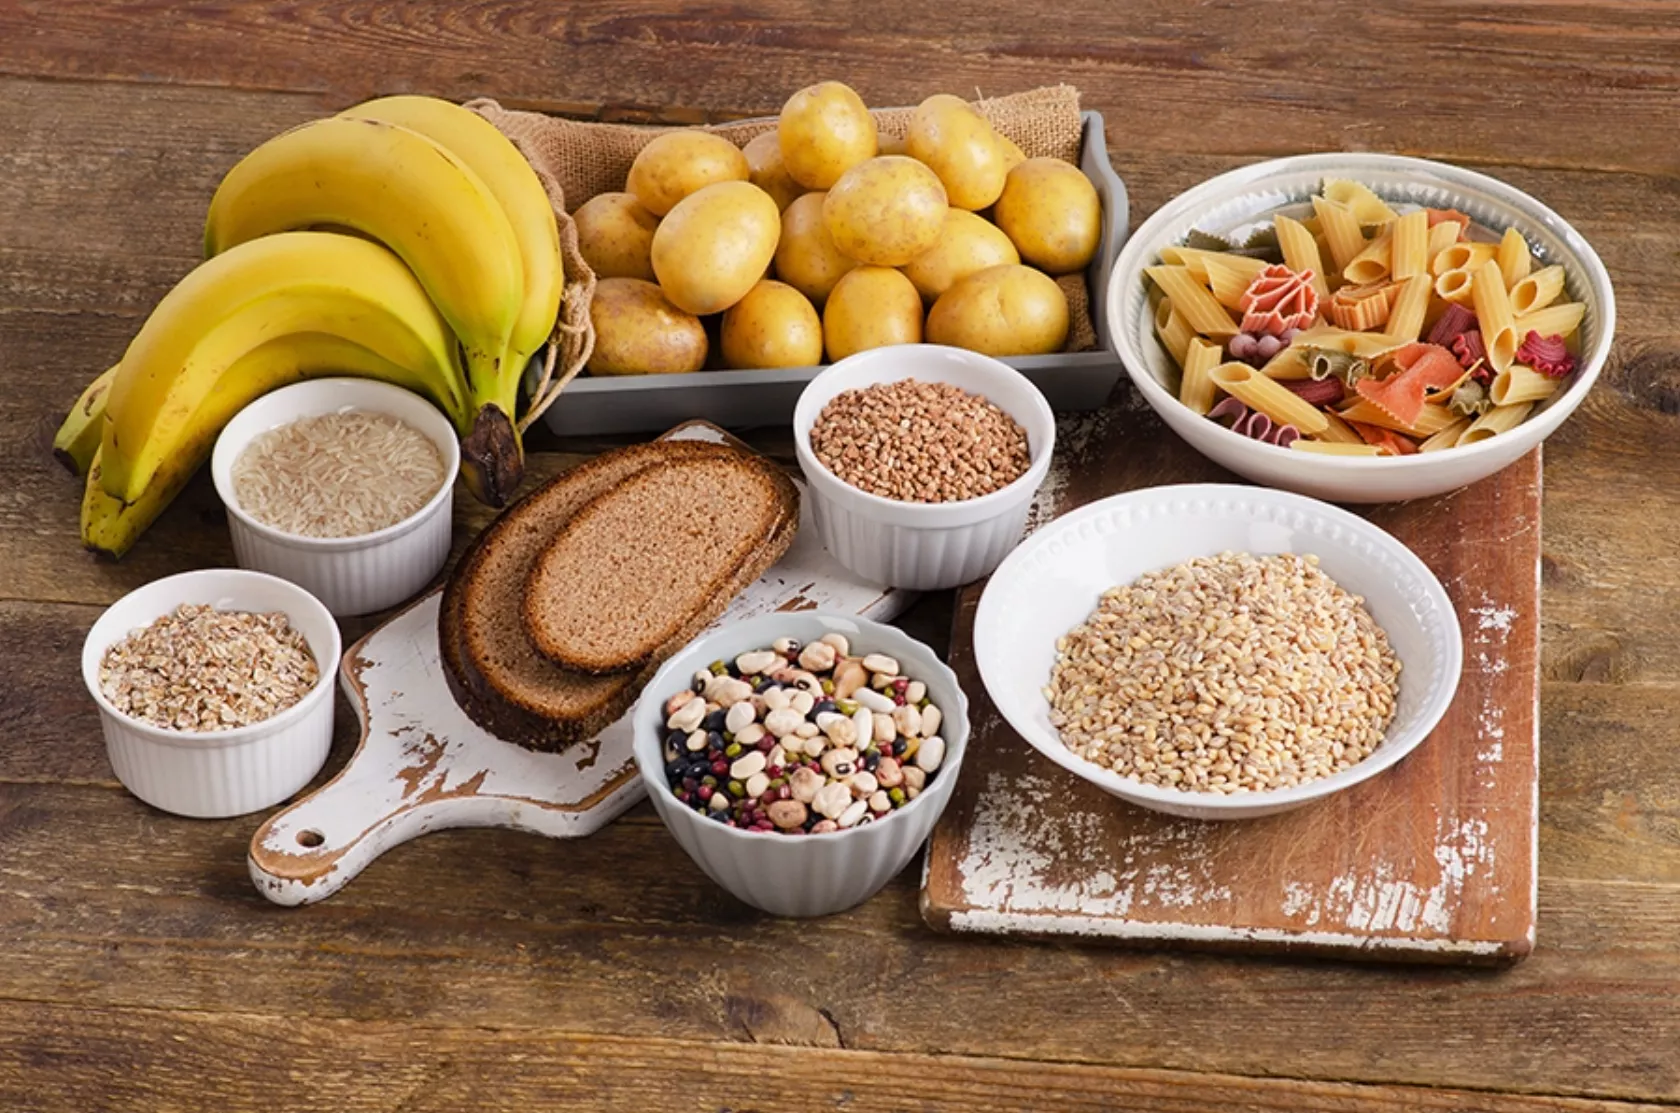 Kohlenhydratreiche Nahrungsmittel wie Bananen, Kartoffeln, Brot, Getreide und Hülsenfrüchte auf einem Tisch angeordnet.